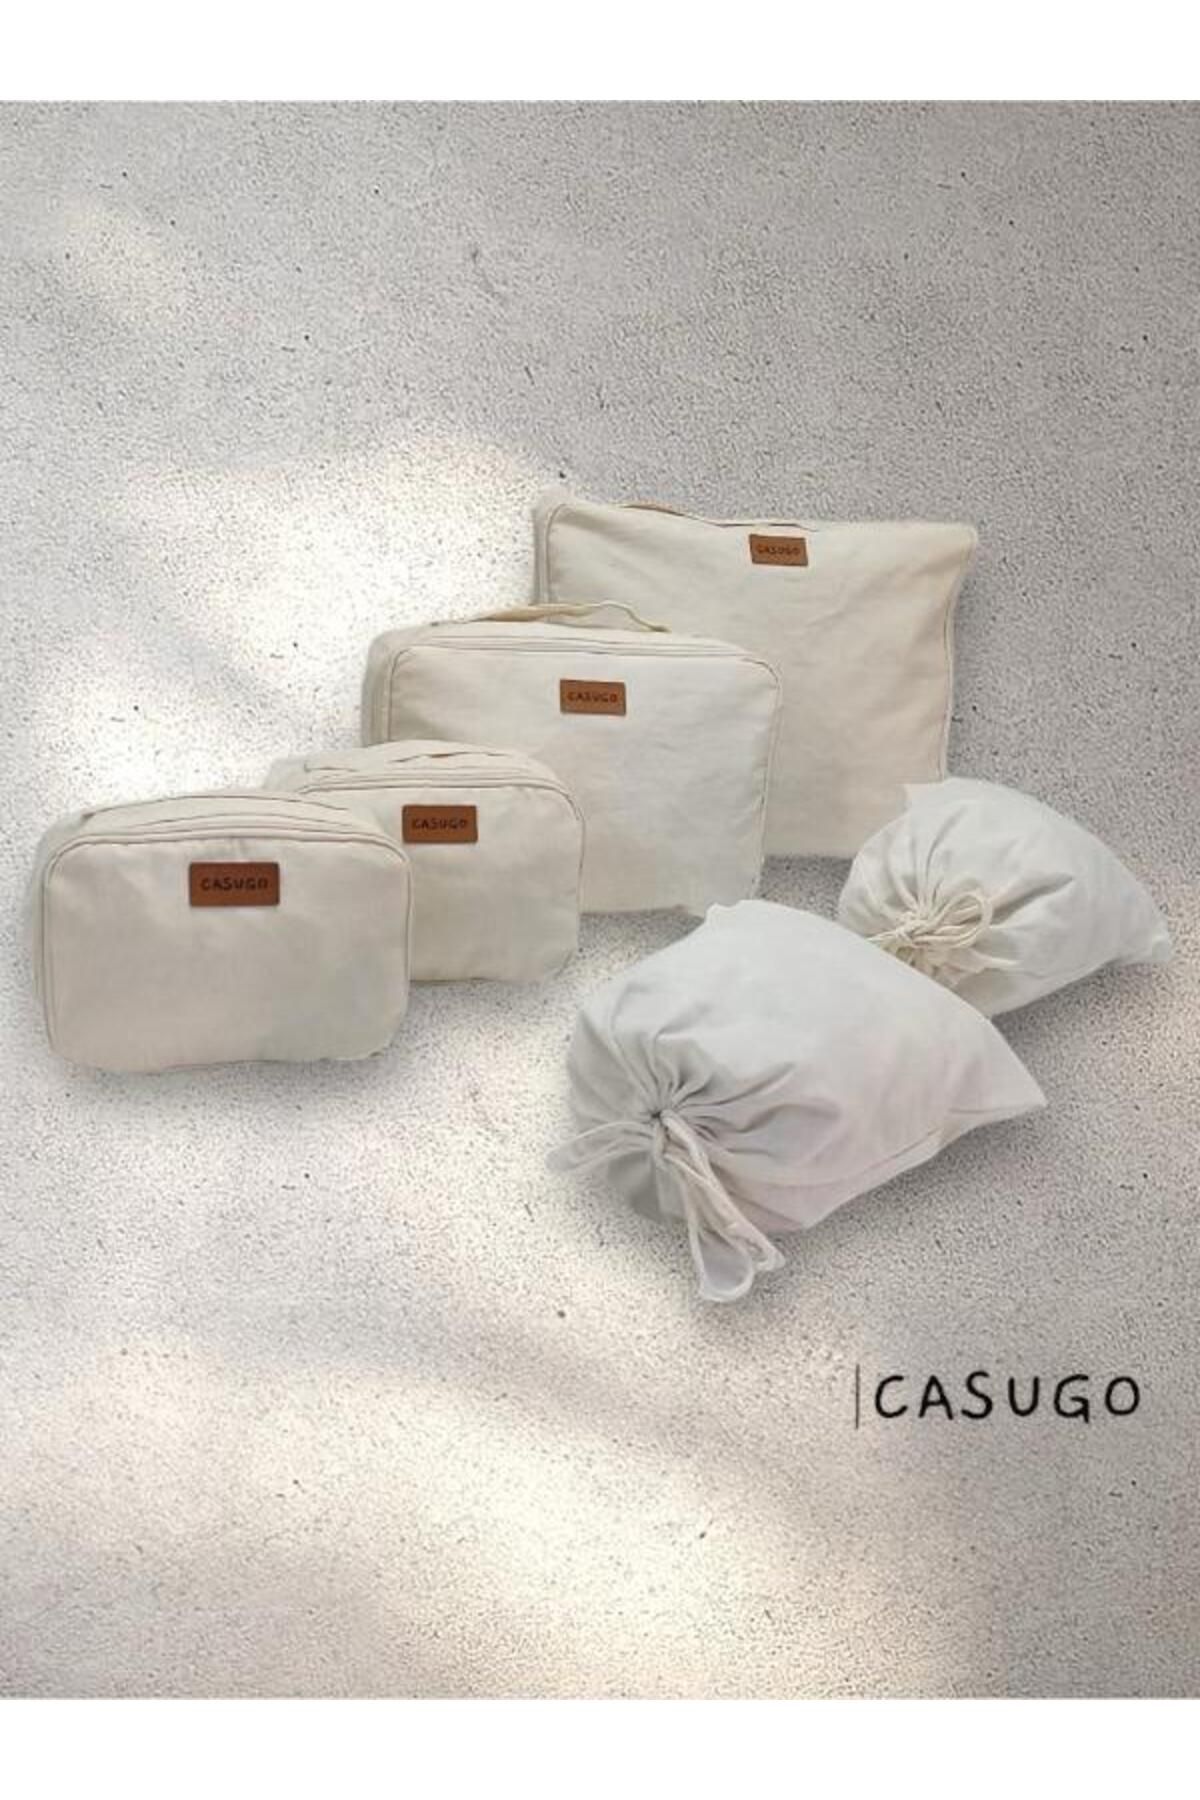 CASUGO Bavul İçi Düzenleyici 6'lı Valiz Düzenleyici-Doğum Çantası Düzenleyici %100 Pamuk